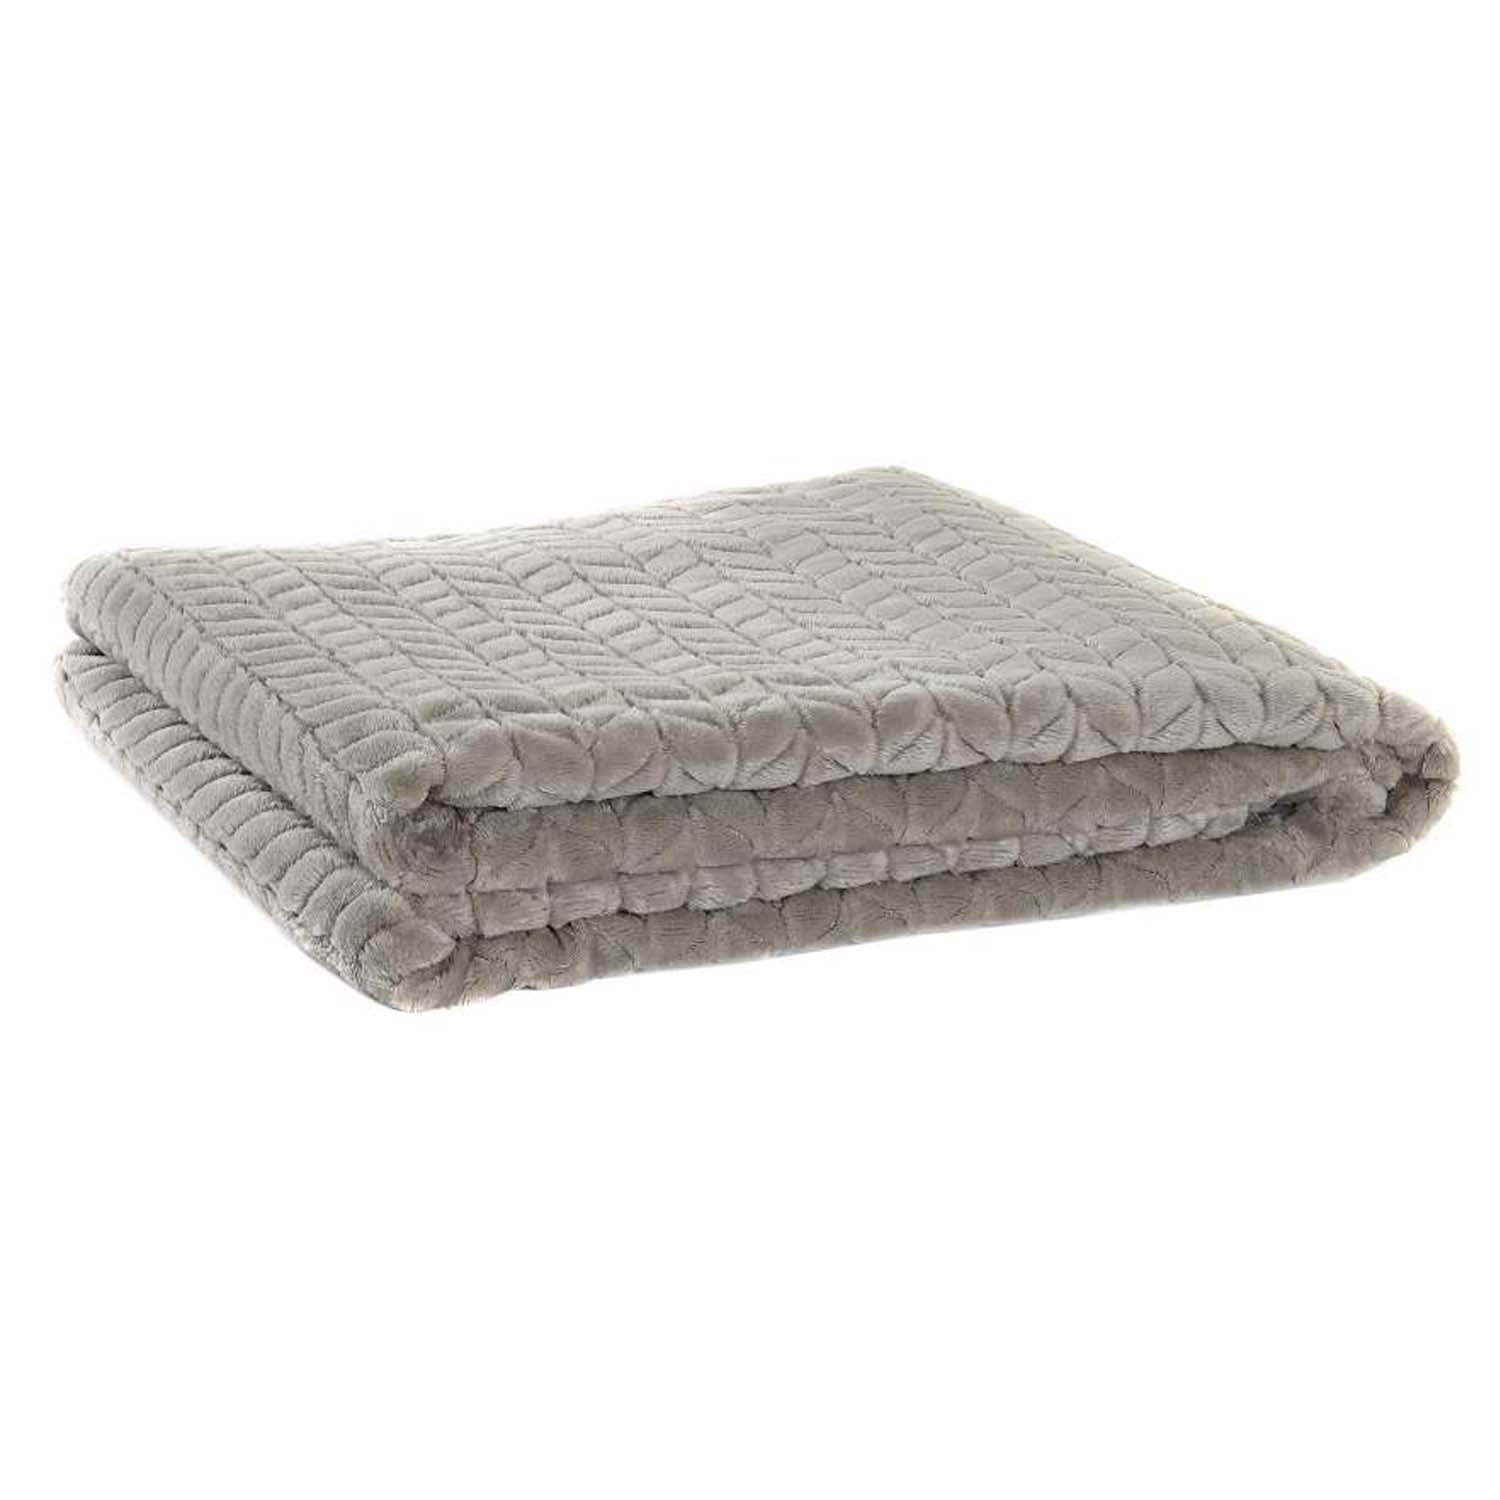 Soft grey velvet blanket